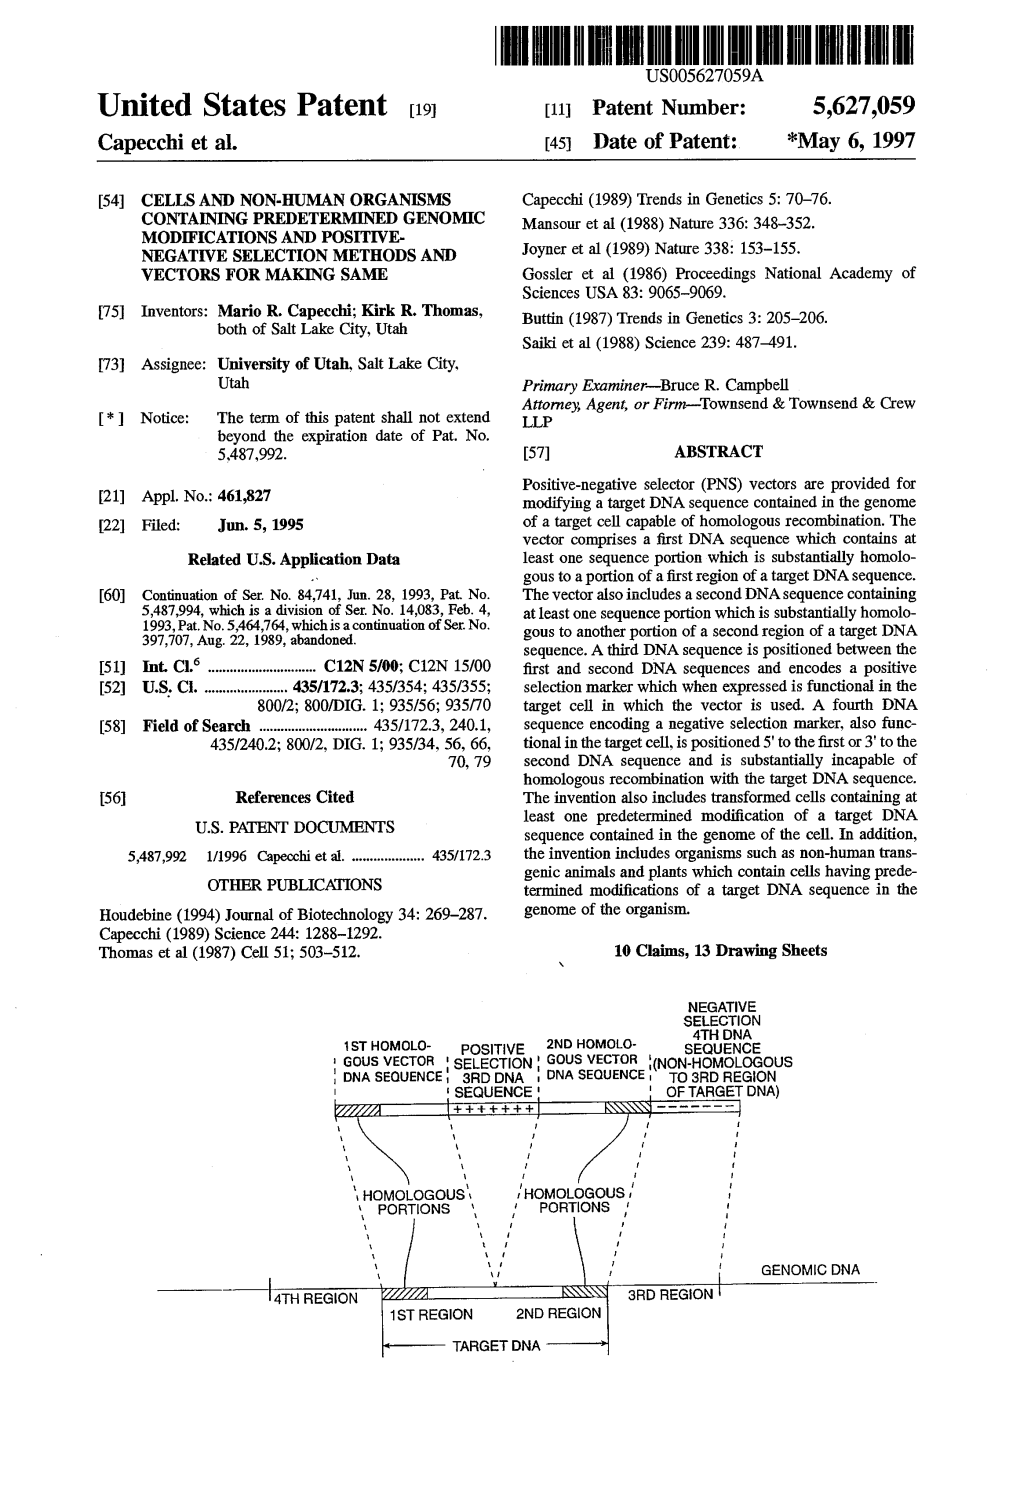 United States Patent (19) 11 Patent Number: 5,627,059 Capecchi Et Al